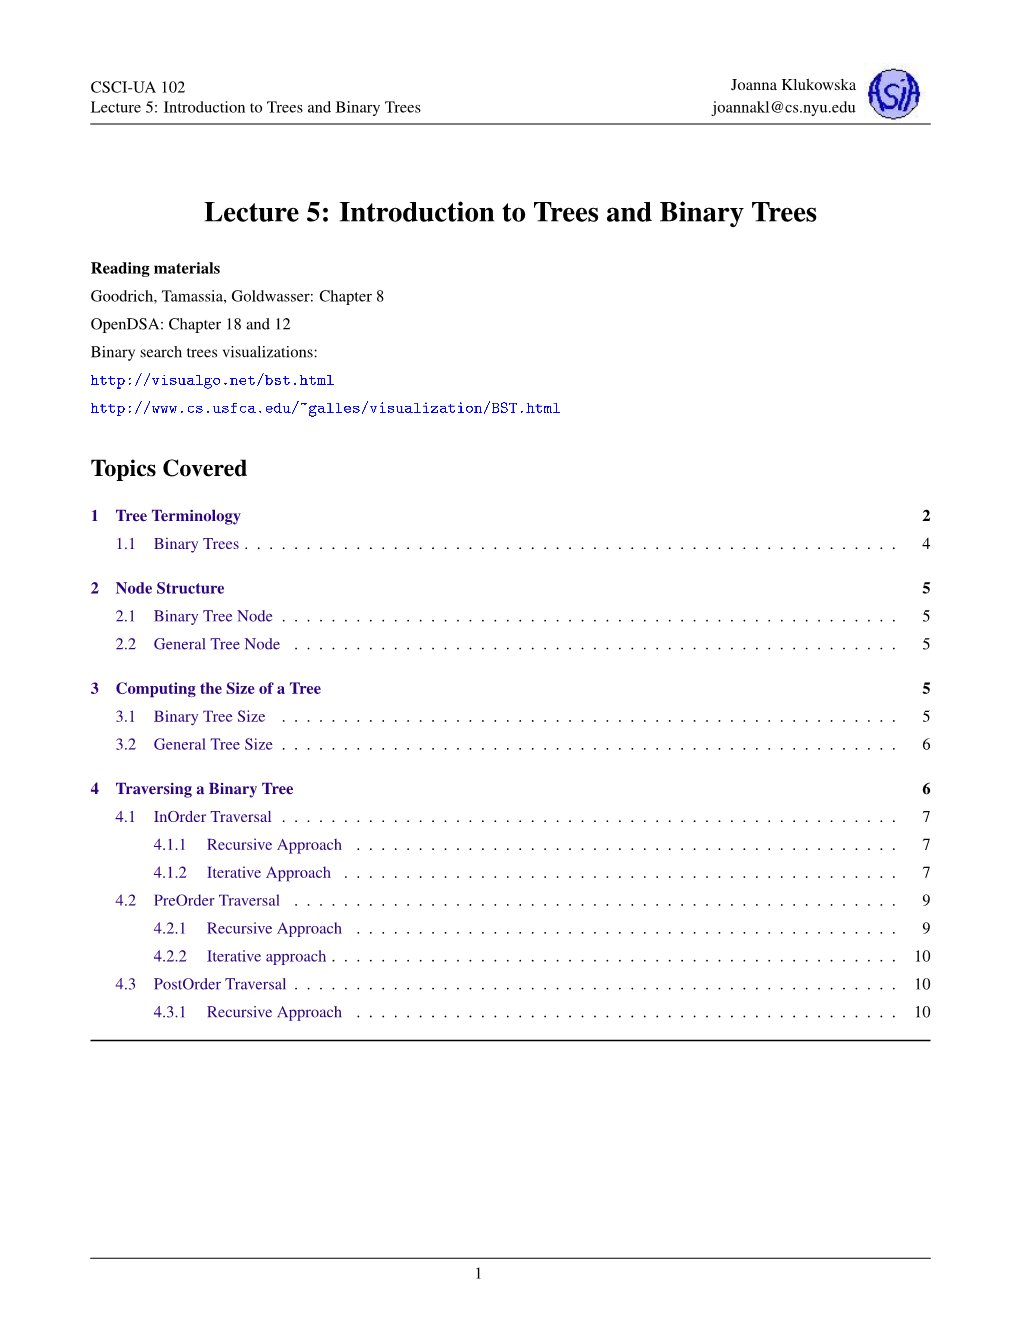 Introduction to Trees and Binary Trees Joannakl@Cs.Nyu.Edu